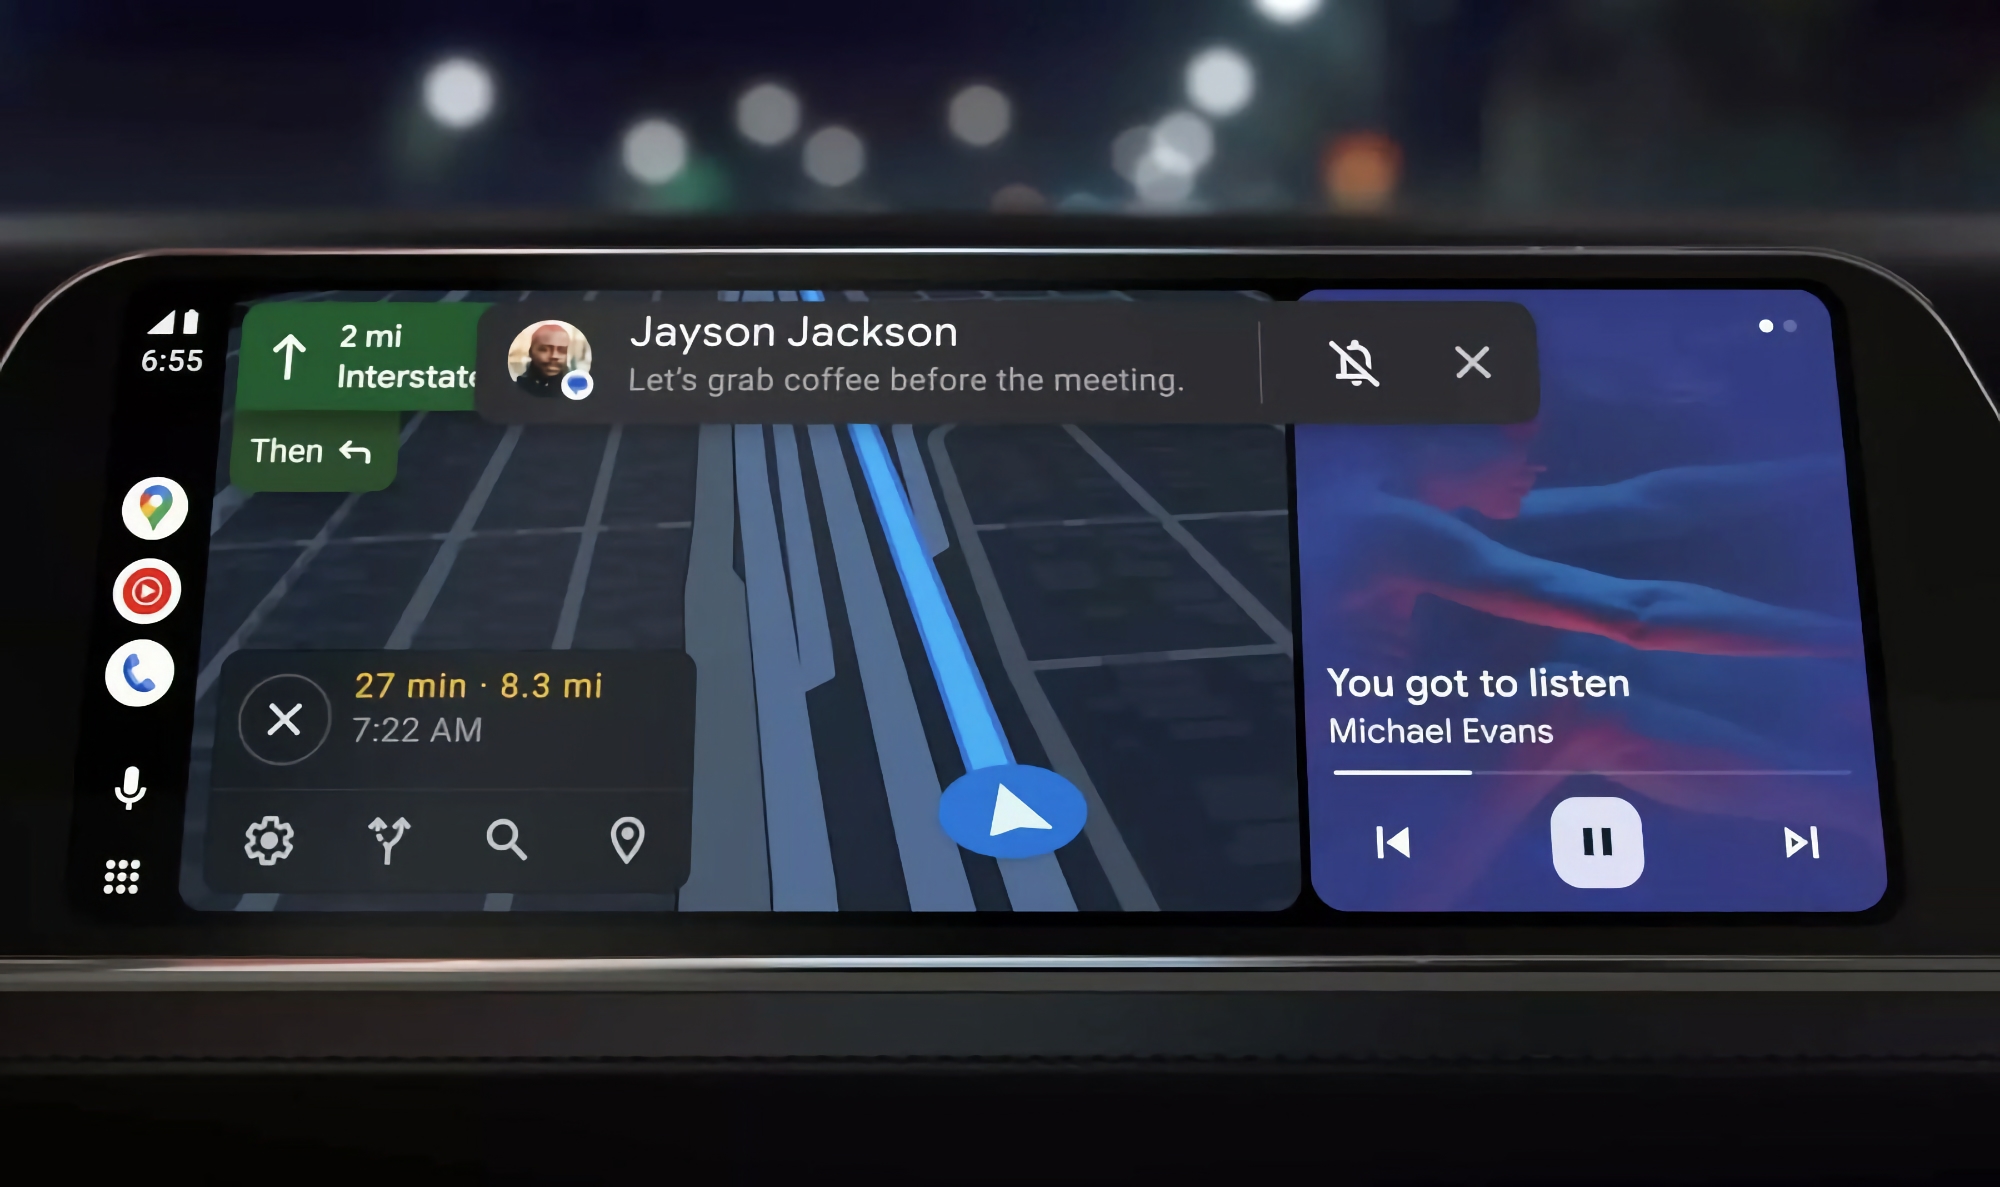 Google Assistant i Android Auto kommer att kunna sammanfatta dina meddelanden med hjälp av AI